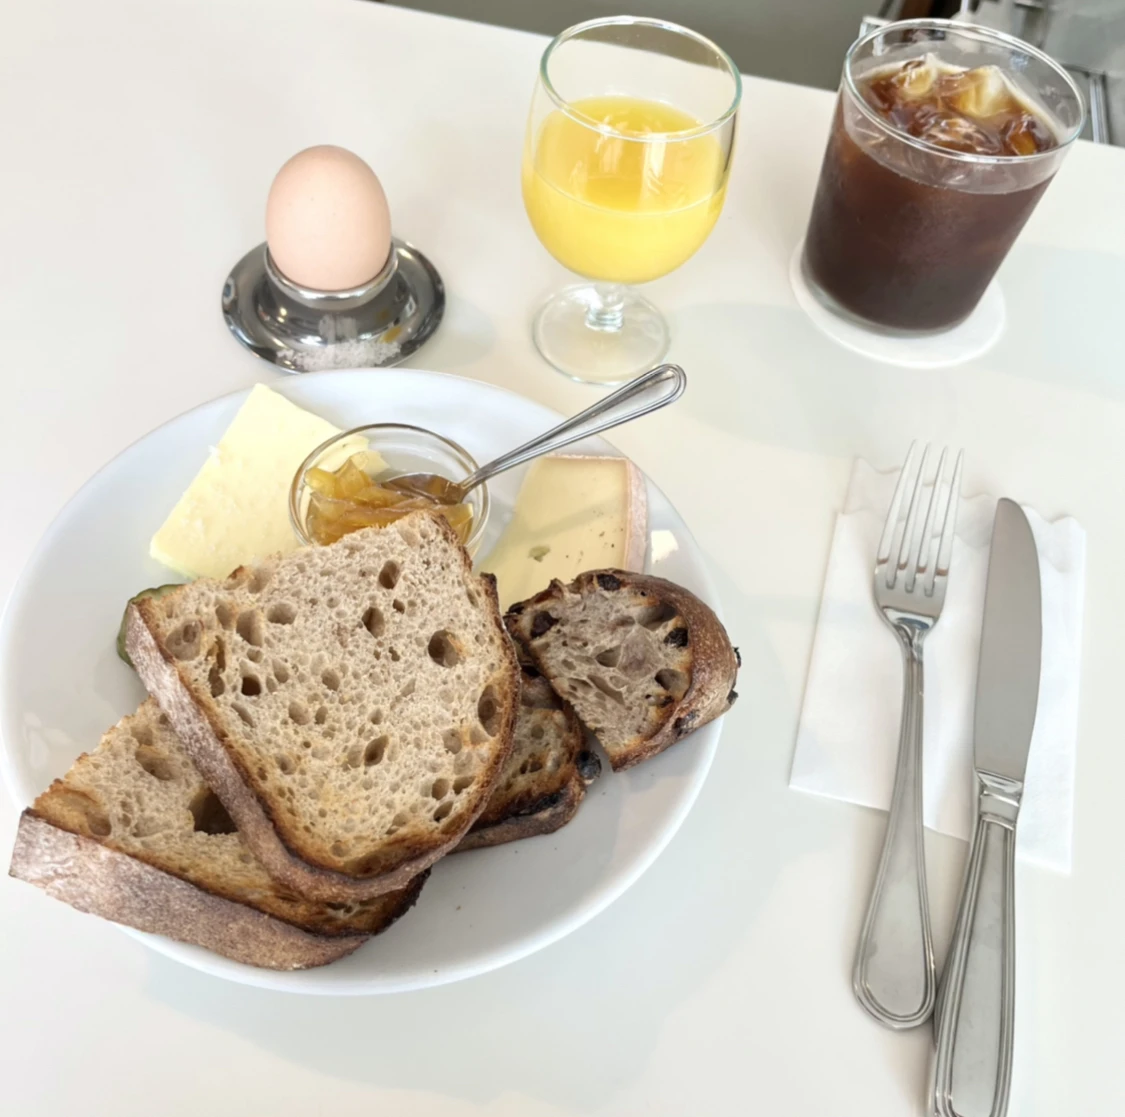 　パン、ゆで卵、コーヒーなどシンプルなブランチ